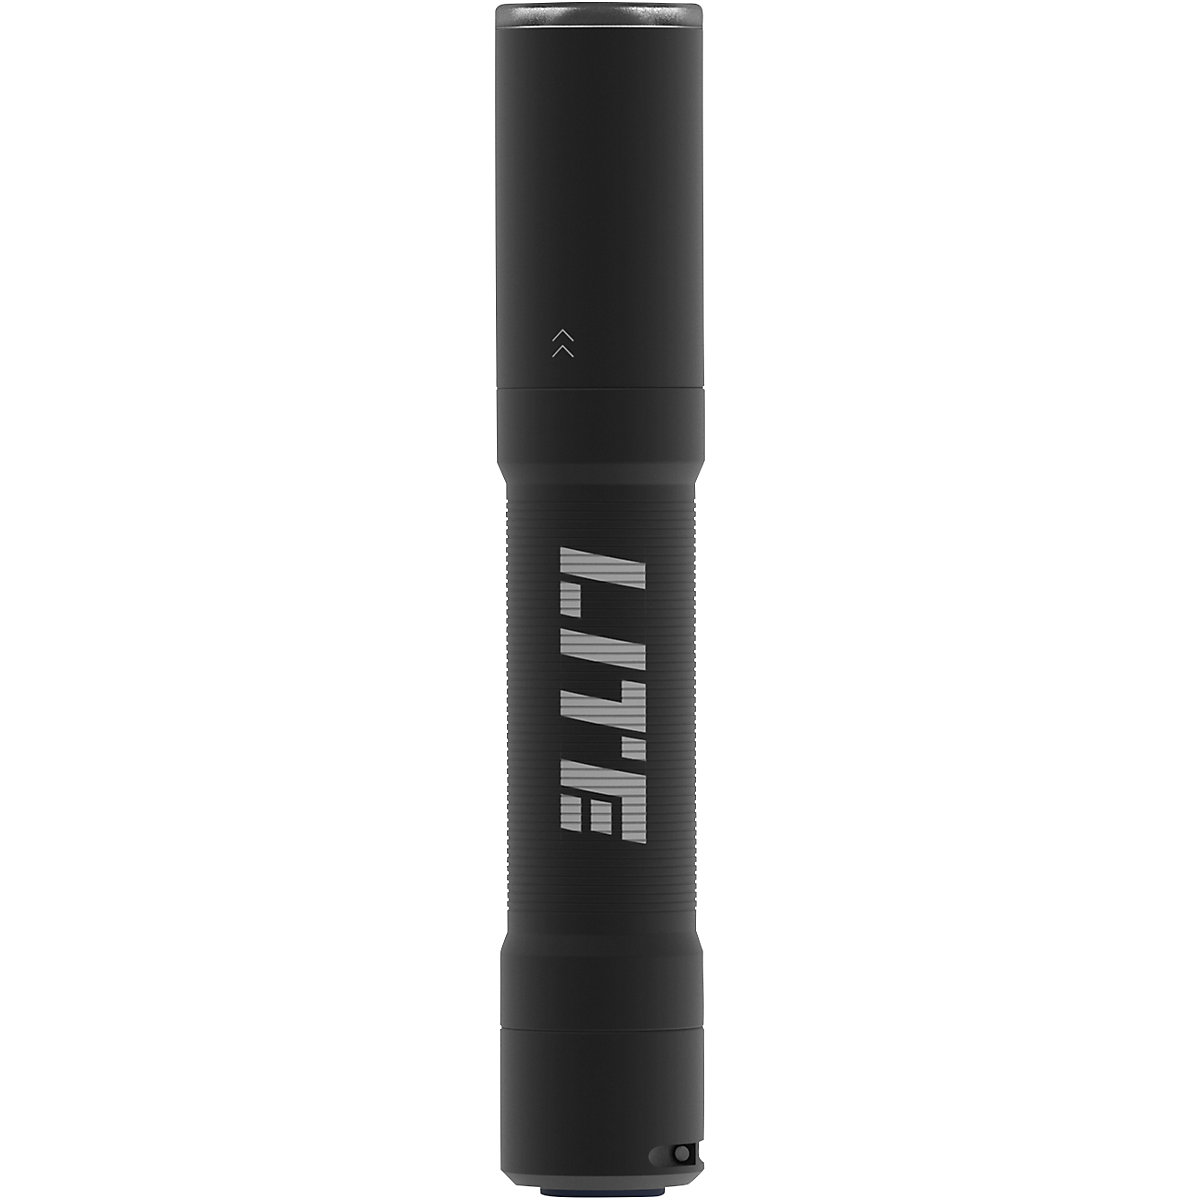 Baterijska LED džepna svjetiljka TORCH LITE 400 – SCANGRIP (Prikaz proizvoda 2)-1